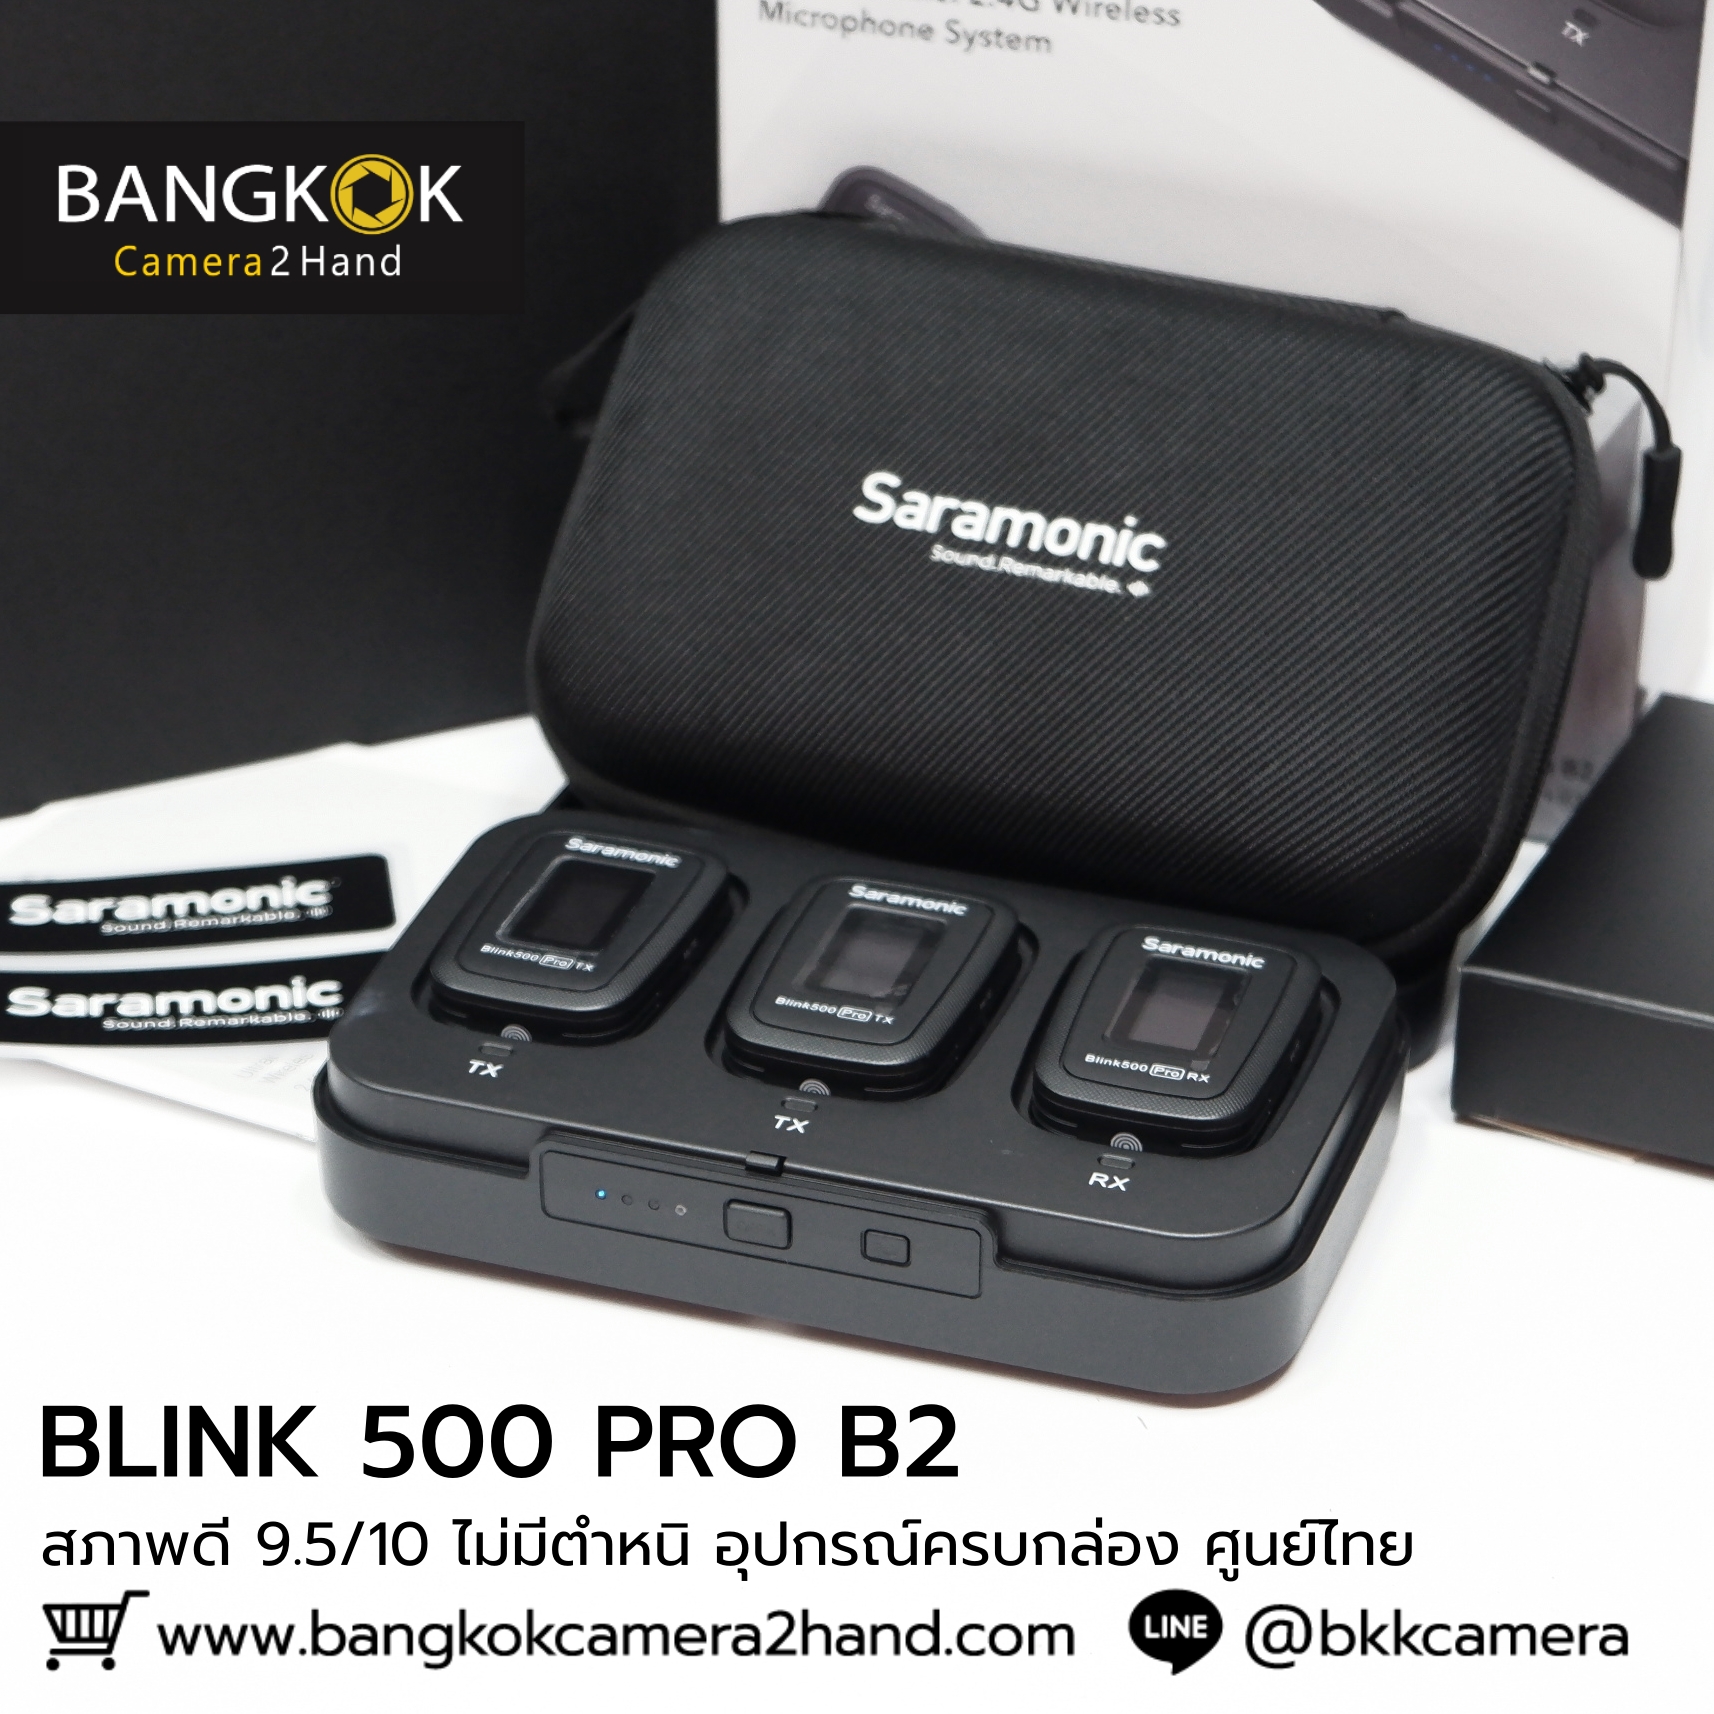 ฺBlink 500 Pro B2 ศูนย์ไทยครบกล่อง